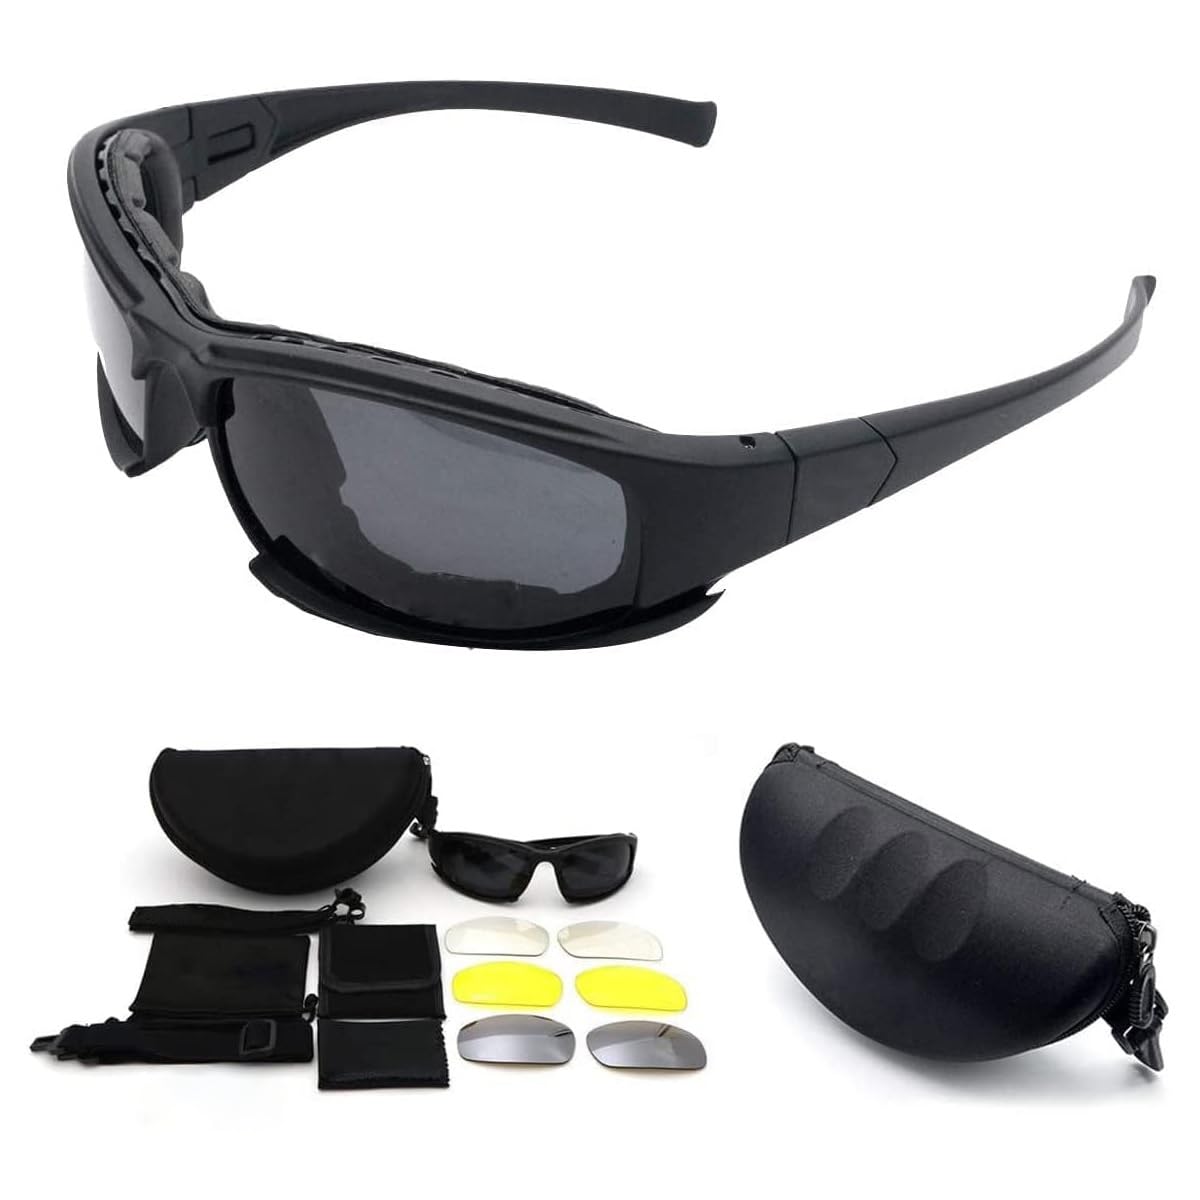 MASO-Brille mit polarisierten Gläsern, MASO X7, Armee-Sonnenbrille, militärische taktische Schutzbrille, 4-Linsen-Set, schwarzer Rahmen